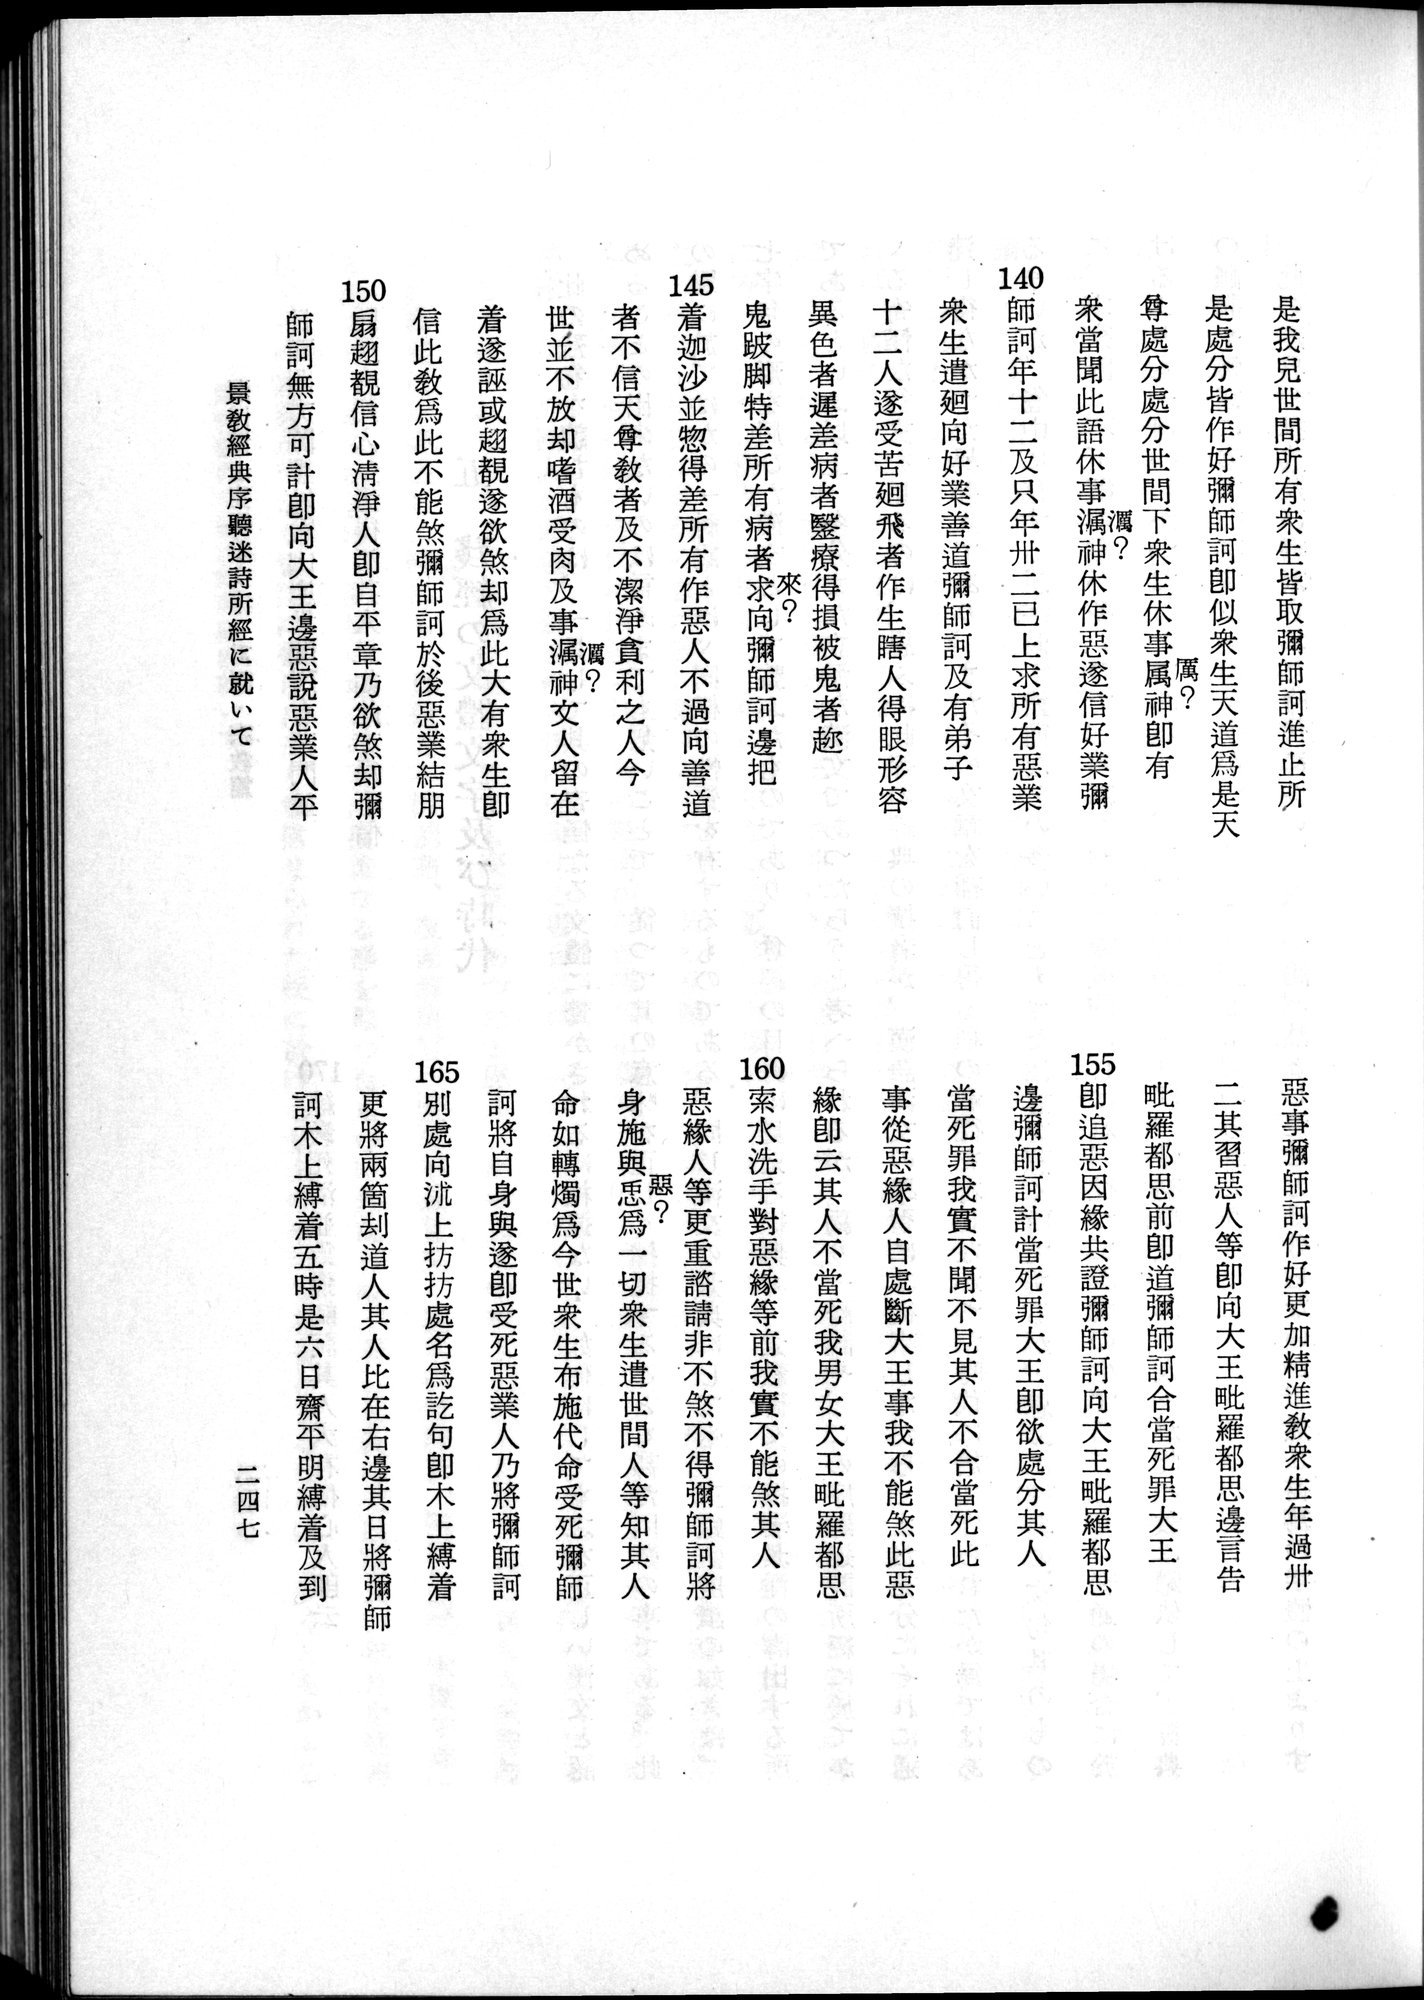 羽田博士史学論文集 : vol.2 / 309 ページ（白黒高解像度画像）